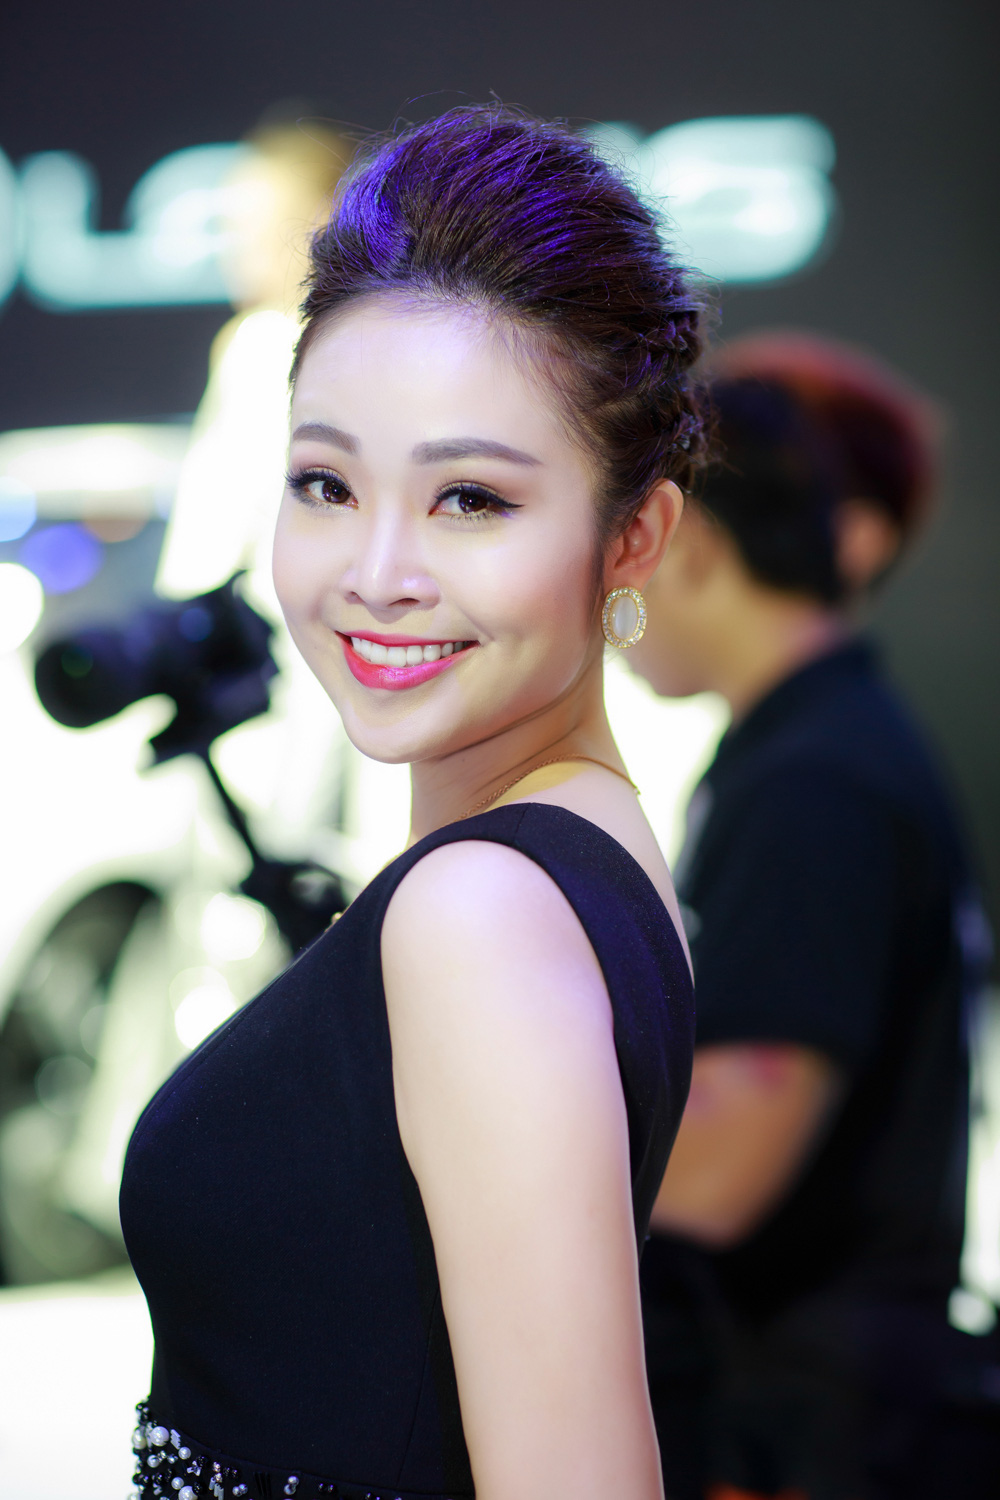 Nhan sắc xinh đẹp của MC Thùy Linh thu hút sự chú ý tại sự kiện - Ảnh 4.